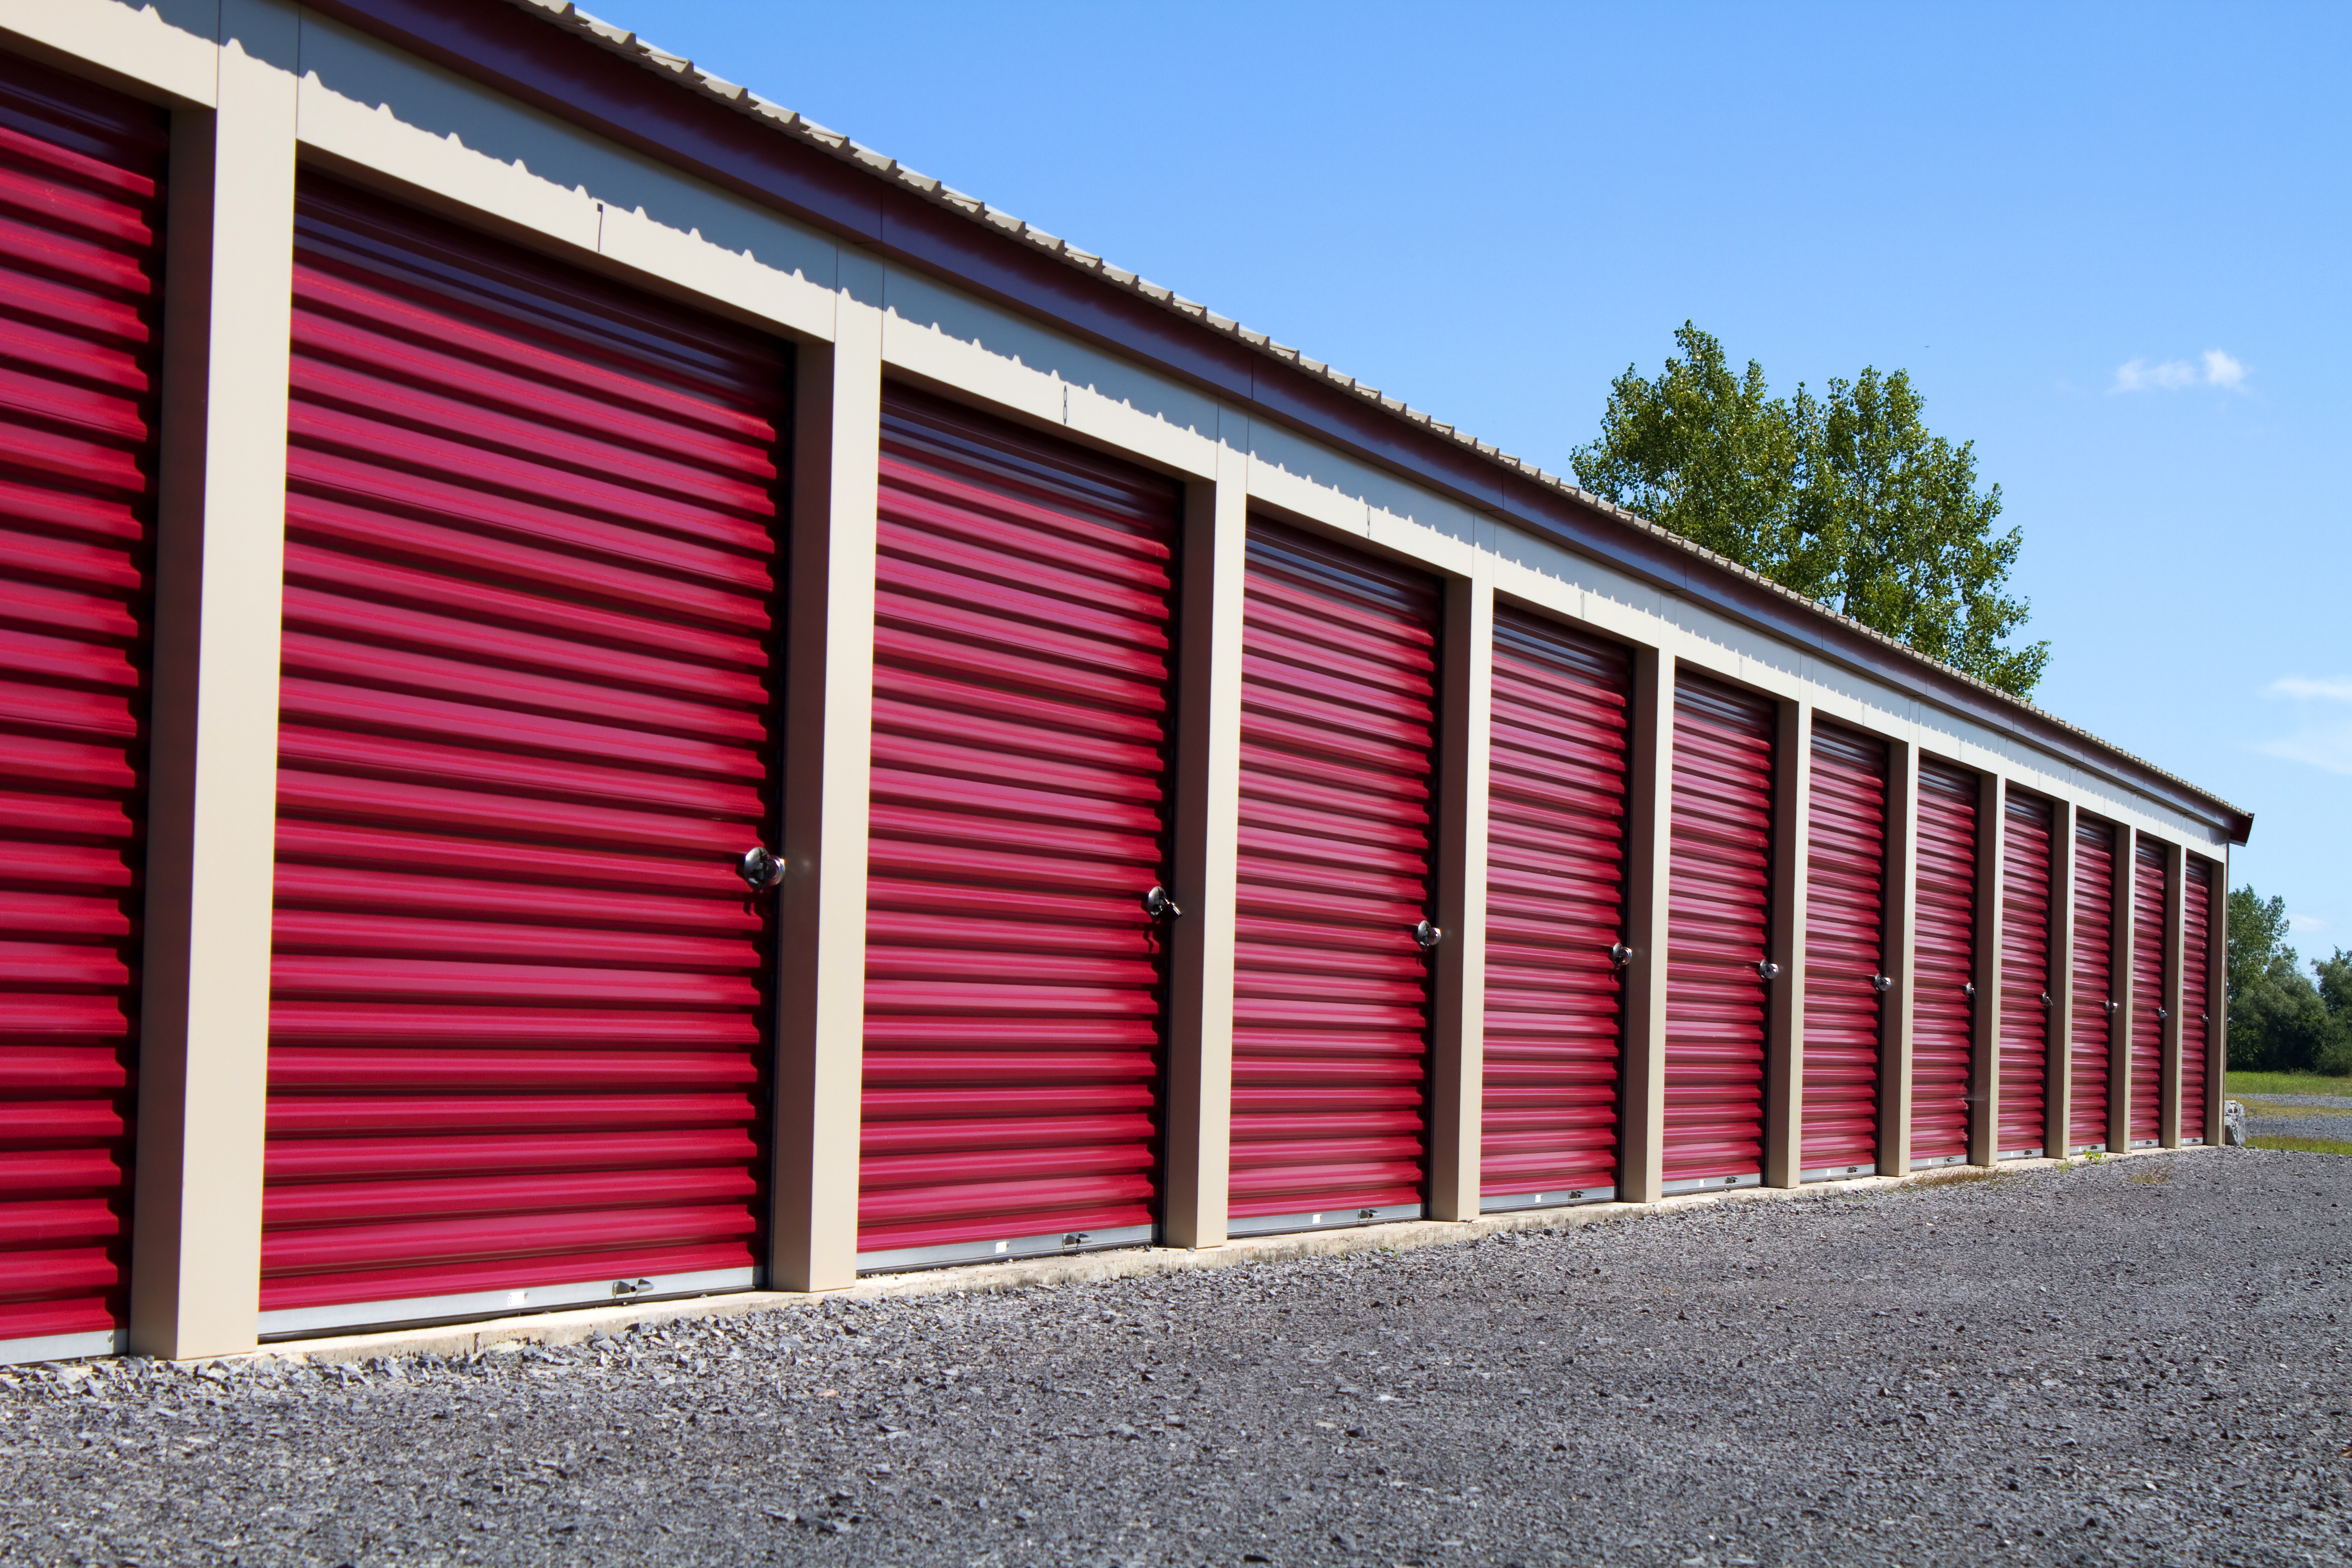 Hamilton Fort Storage - Self Storage Units & Outdoor Parking in Cedar City, UT